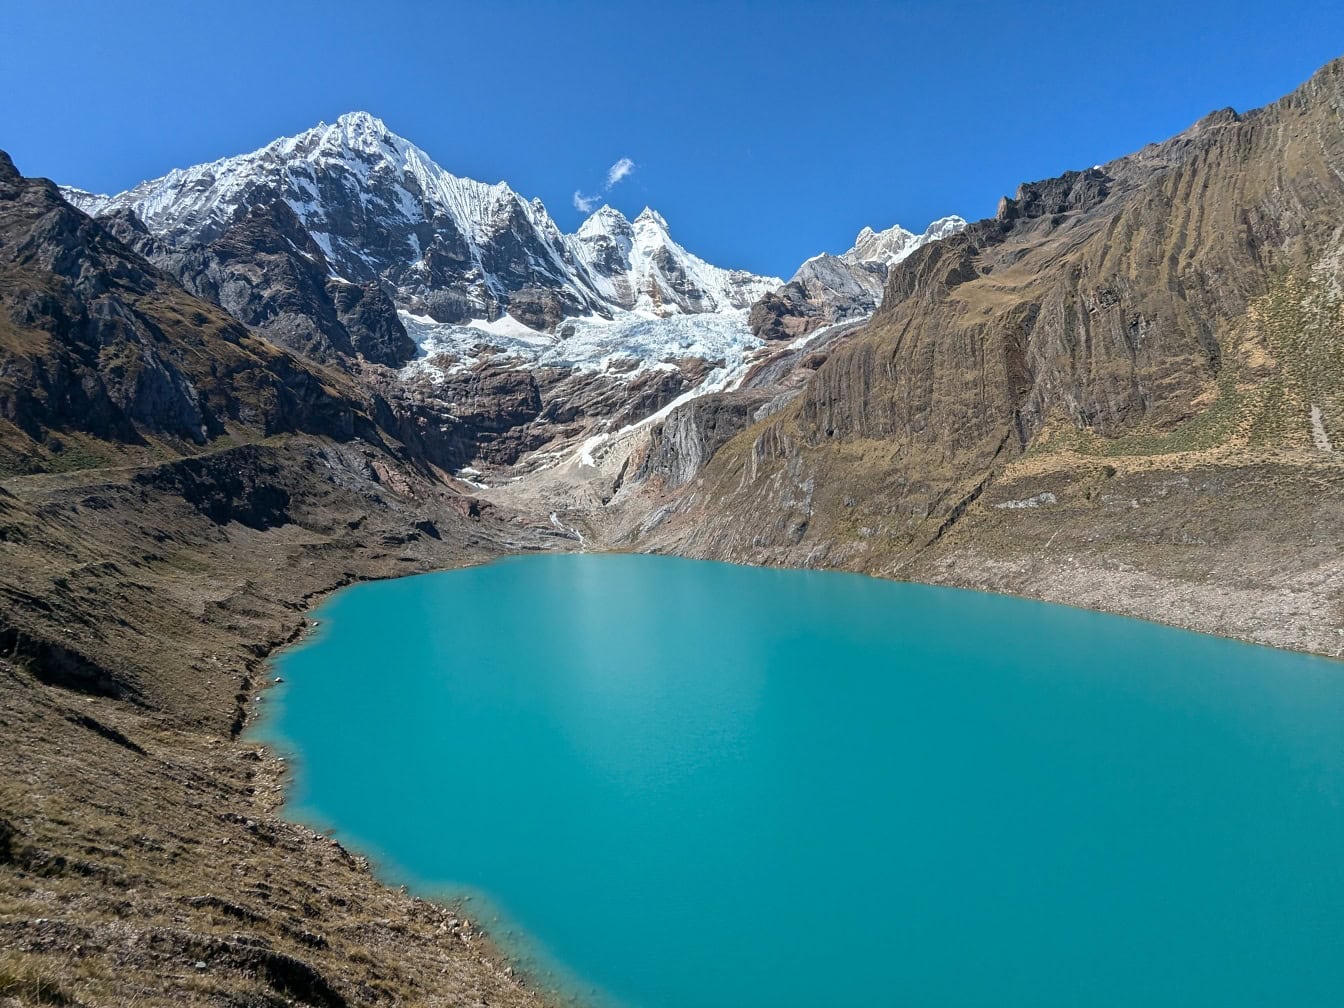 ทิวทัศน์อันงดงามของทะเลสาบ Llanguanco สีฟ้าครามในอุทยานธรรมชาติที่เทือกเขา Cordillera Huayhuash ในเทือกเขาแอนดีสในเปรู